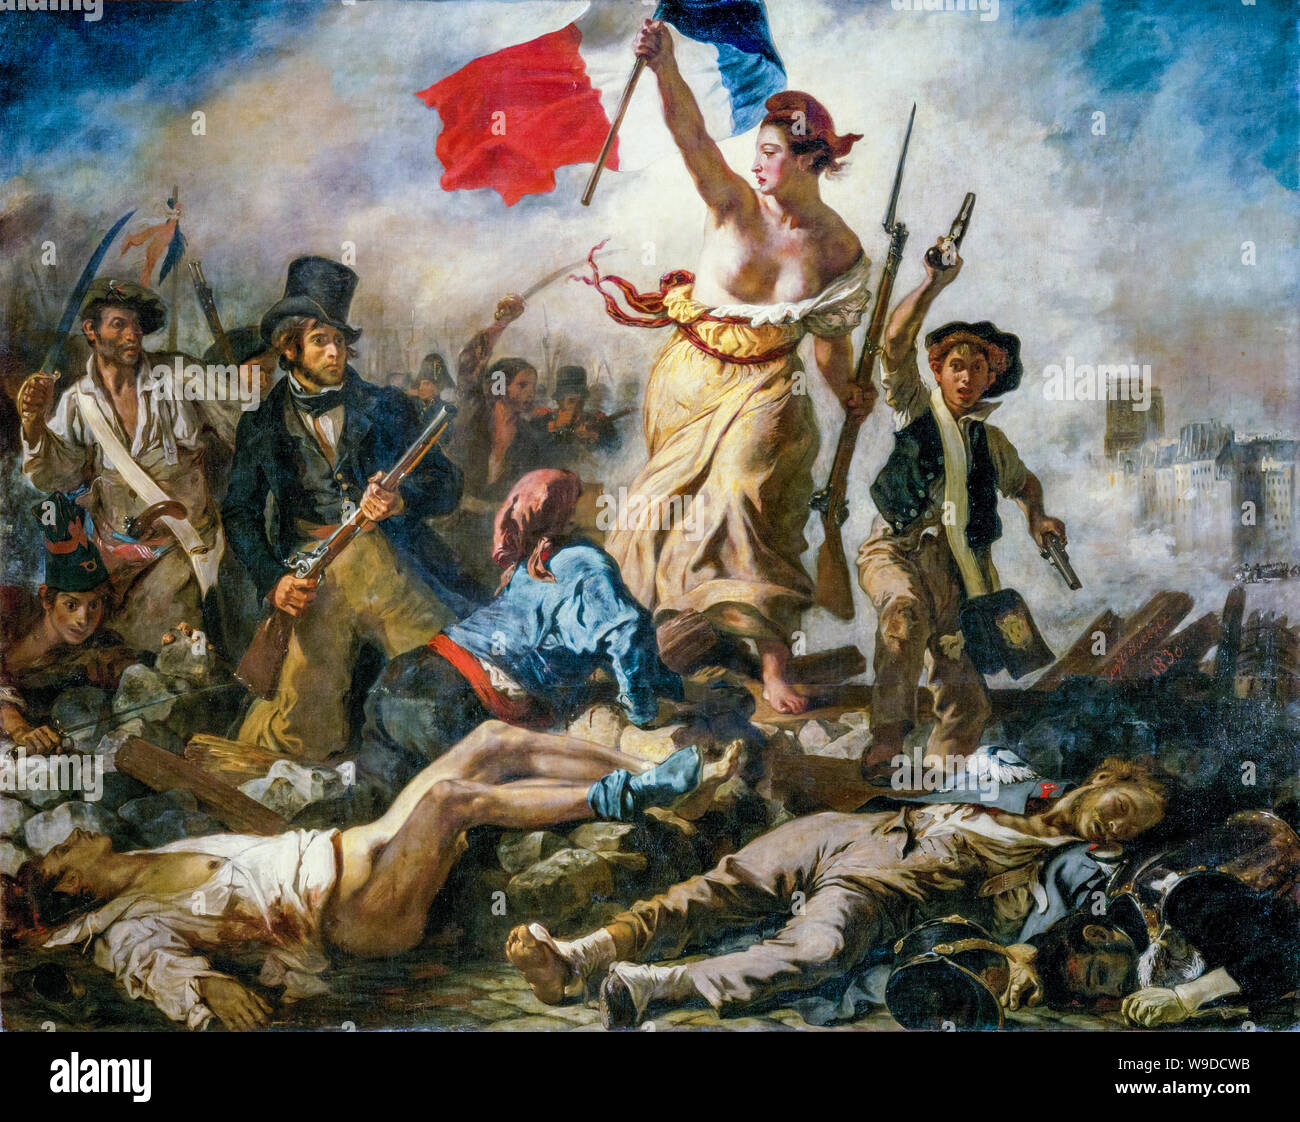 Eugène Delacroix, liberté à la tête du peuple, peinture de la révolution française, 1830 Banque D'Images